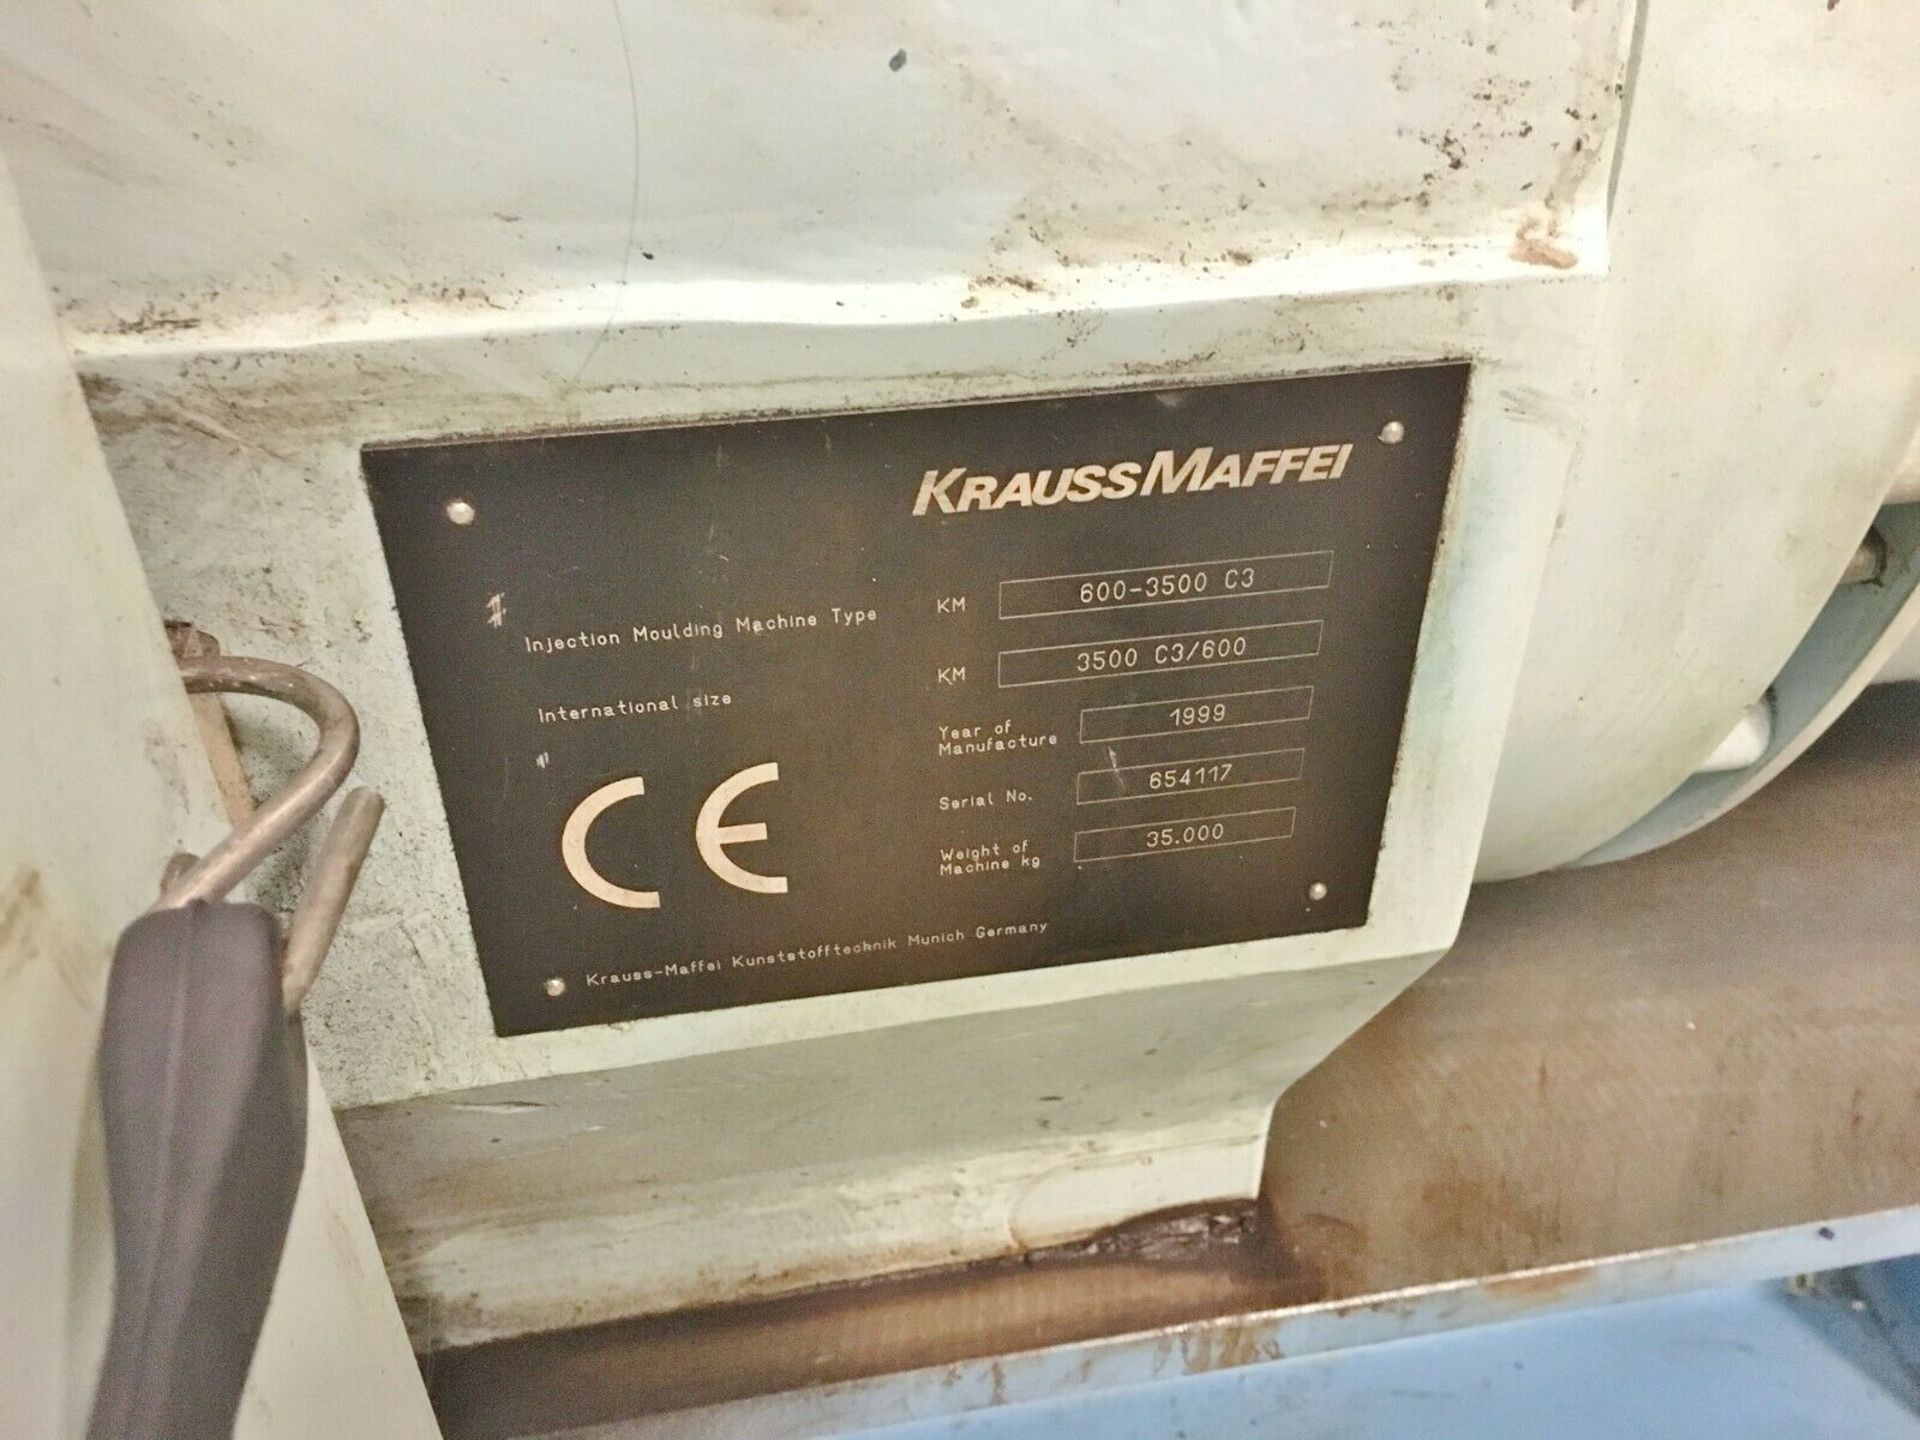 Krauss Maffei 600-3500 C3 Injection Molding Machine 1999 - Image 3 of 4